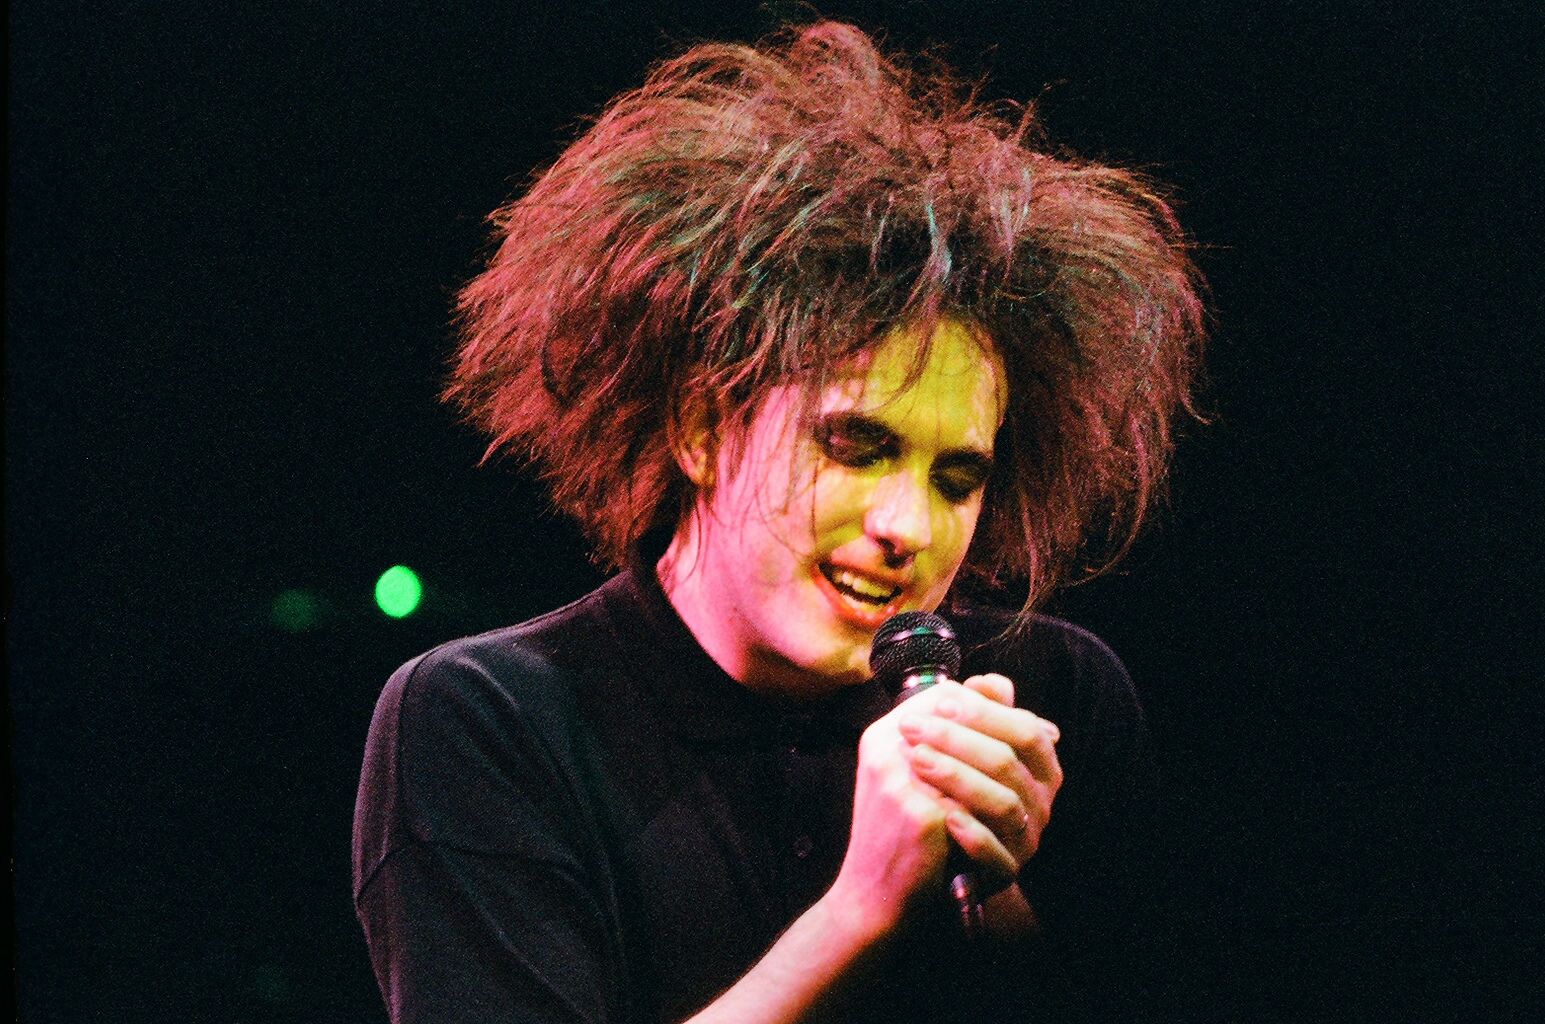 Robert Smith de The Cure se produit sur scène au Royal Albert Hall, le 25 avril 1986, à Londres, au Royaume-Uni. | Source : Getty Images